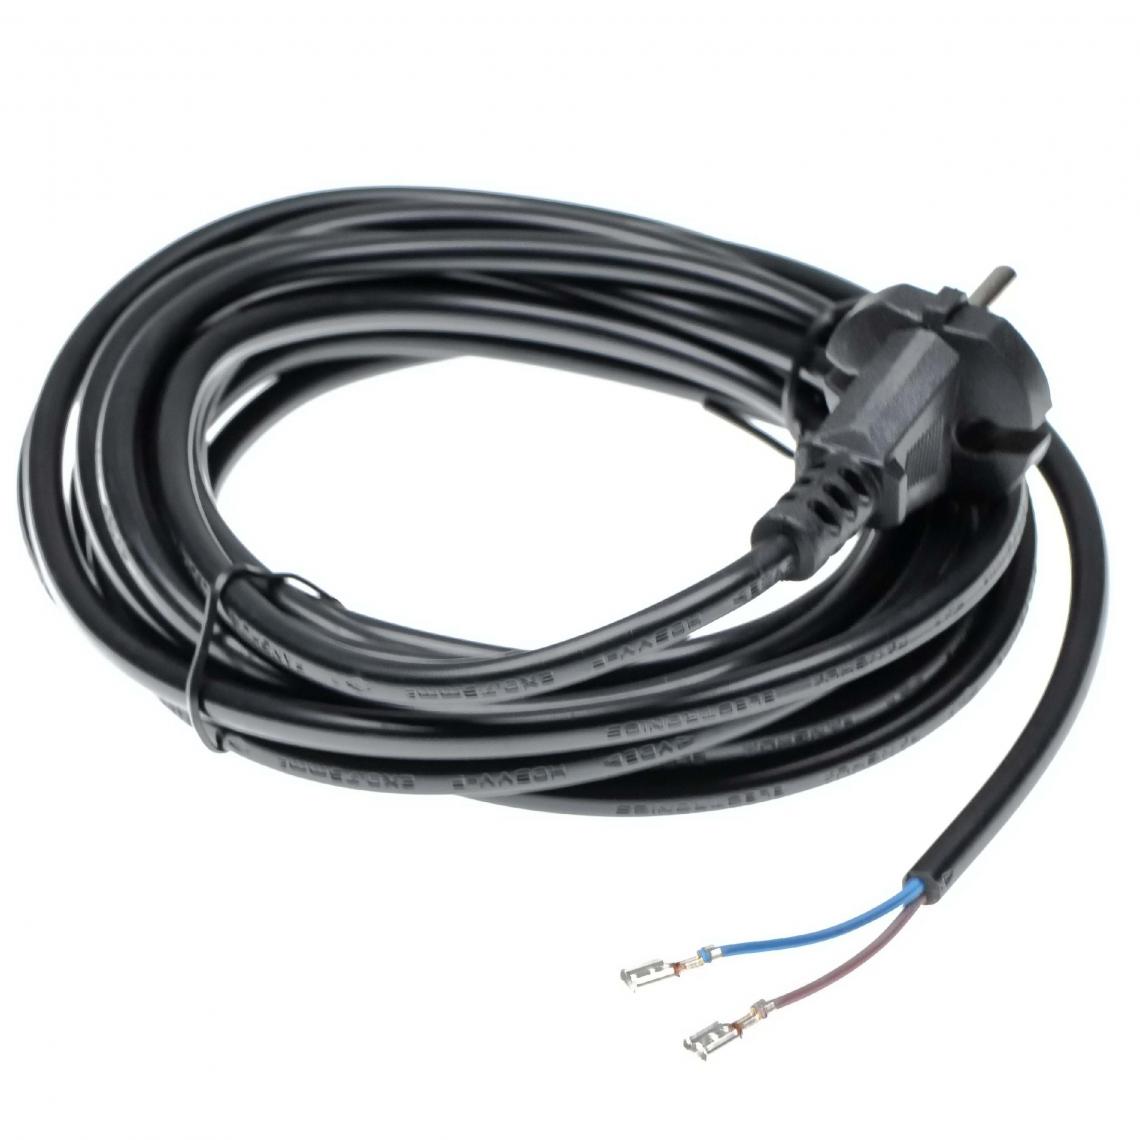 Vhbw - vhbw Câble électrique compatible avec Thomas Inox aspirateurs - 6 m, 4000 W - Accessoire entretien des sols